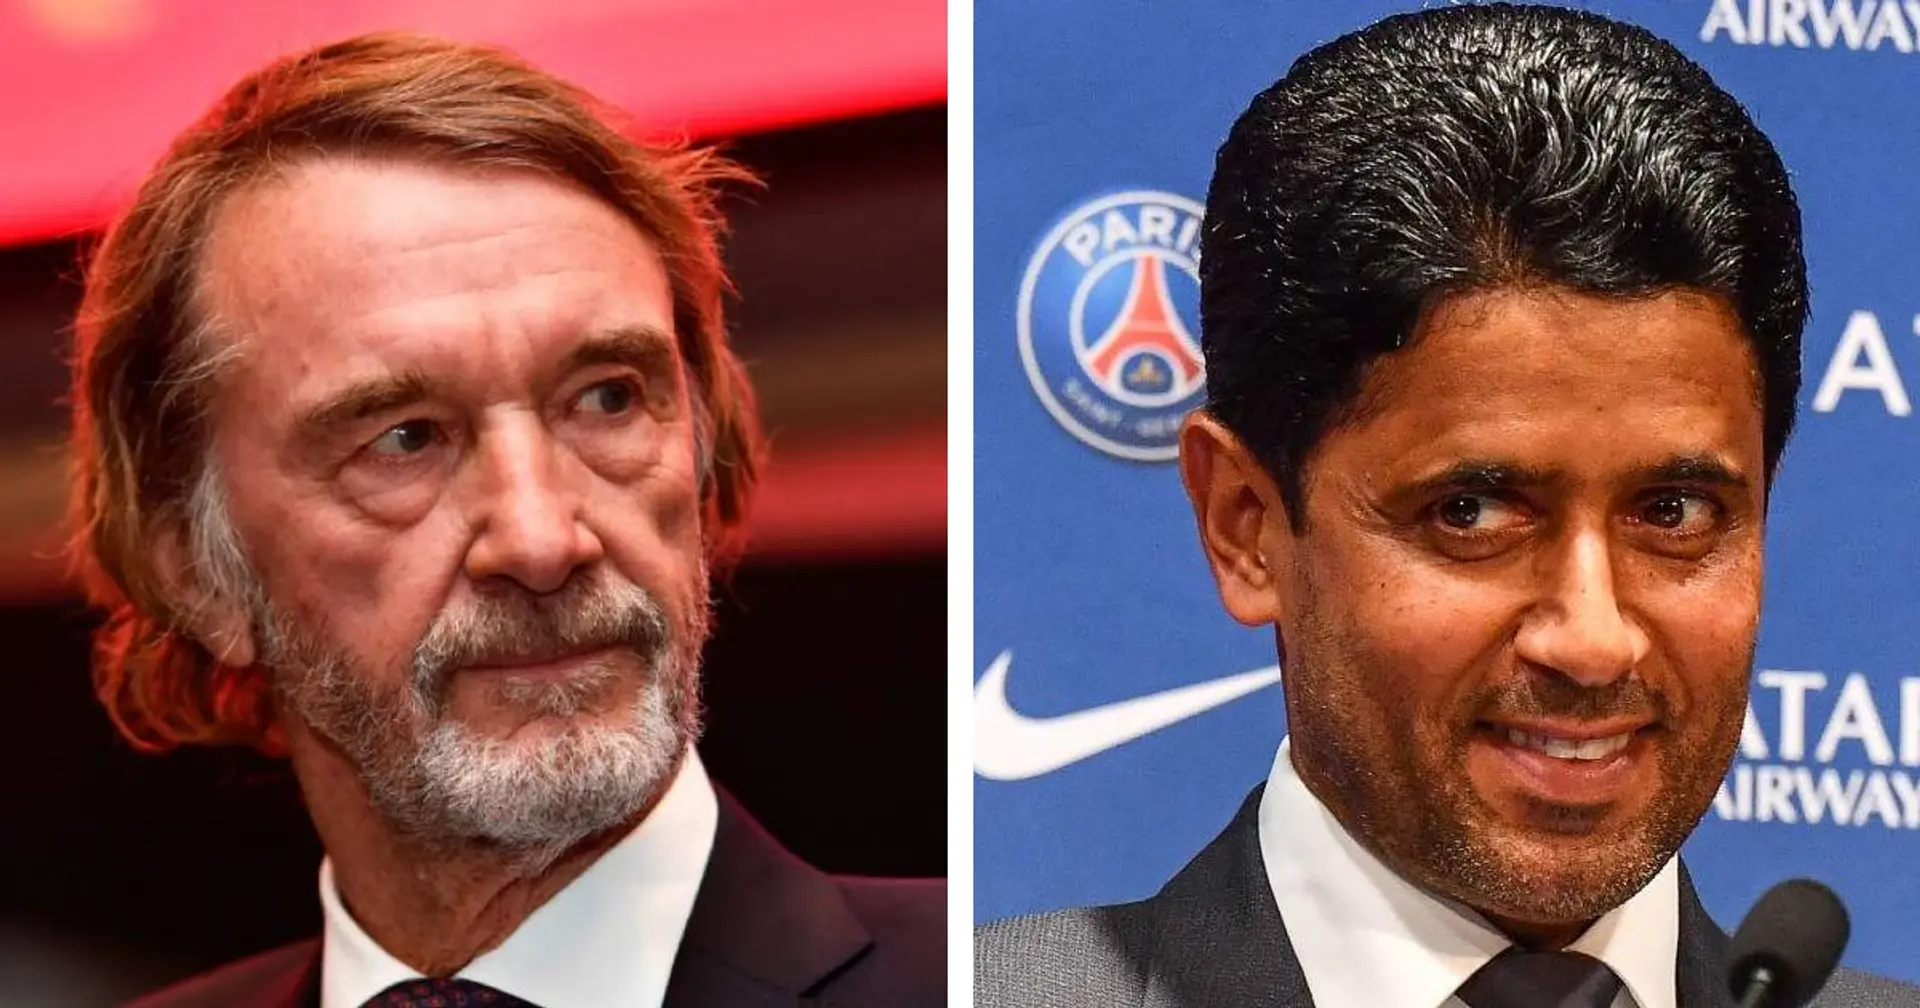 Le PSG peut trembler - le président de l'OGC Nice annonce de grandes ambitions en Ligue 1